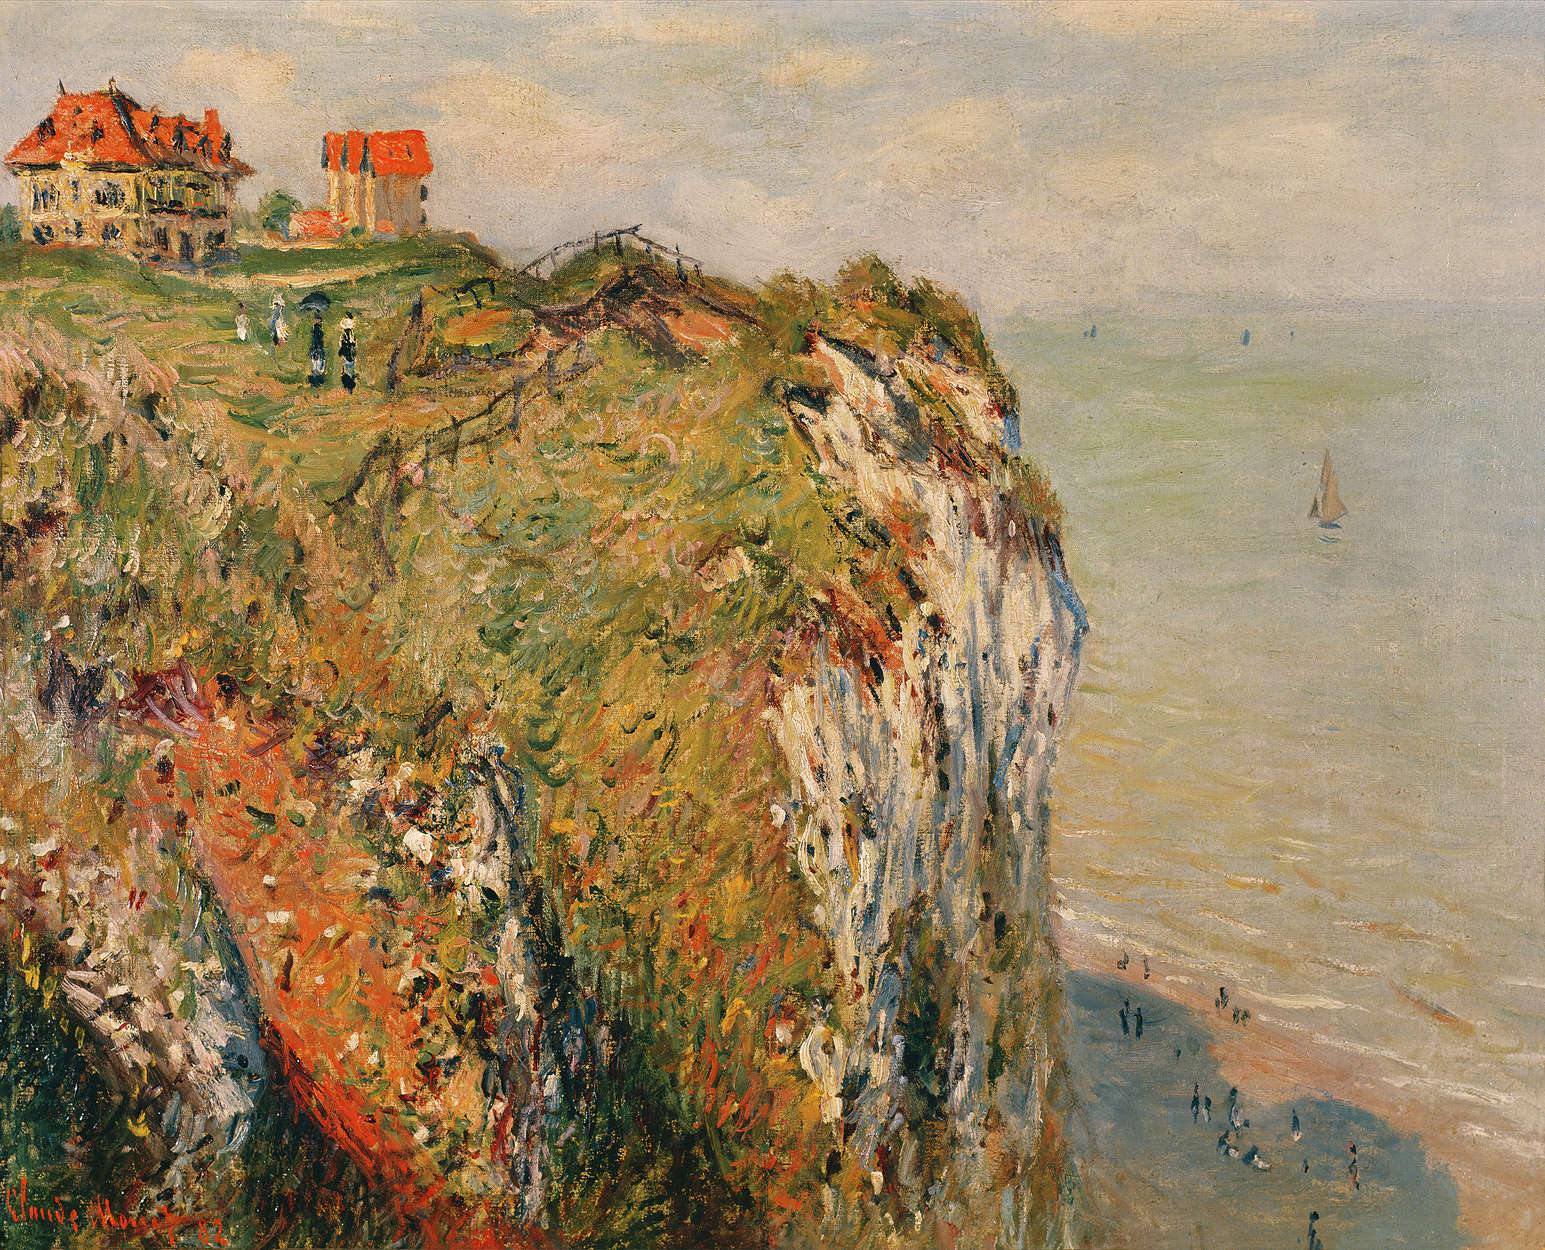             Mural "Acantilado cerca de Dieppe" de Claude Monet
        